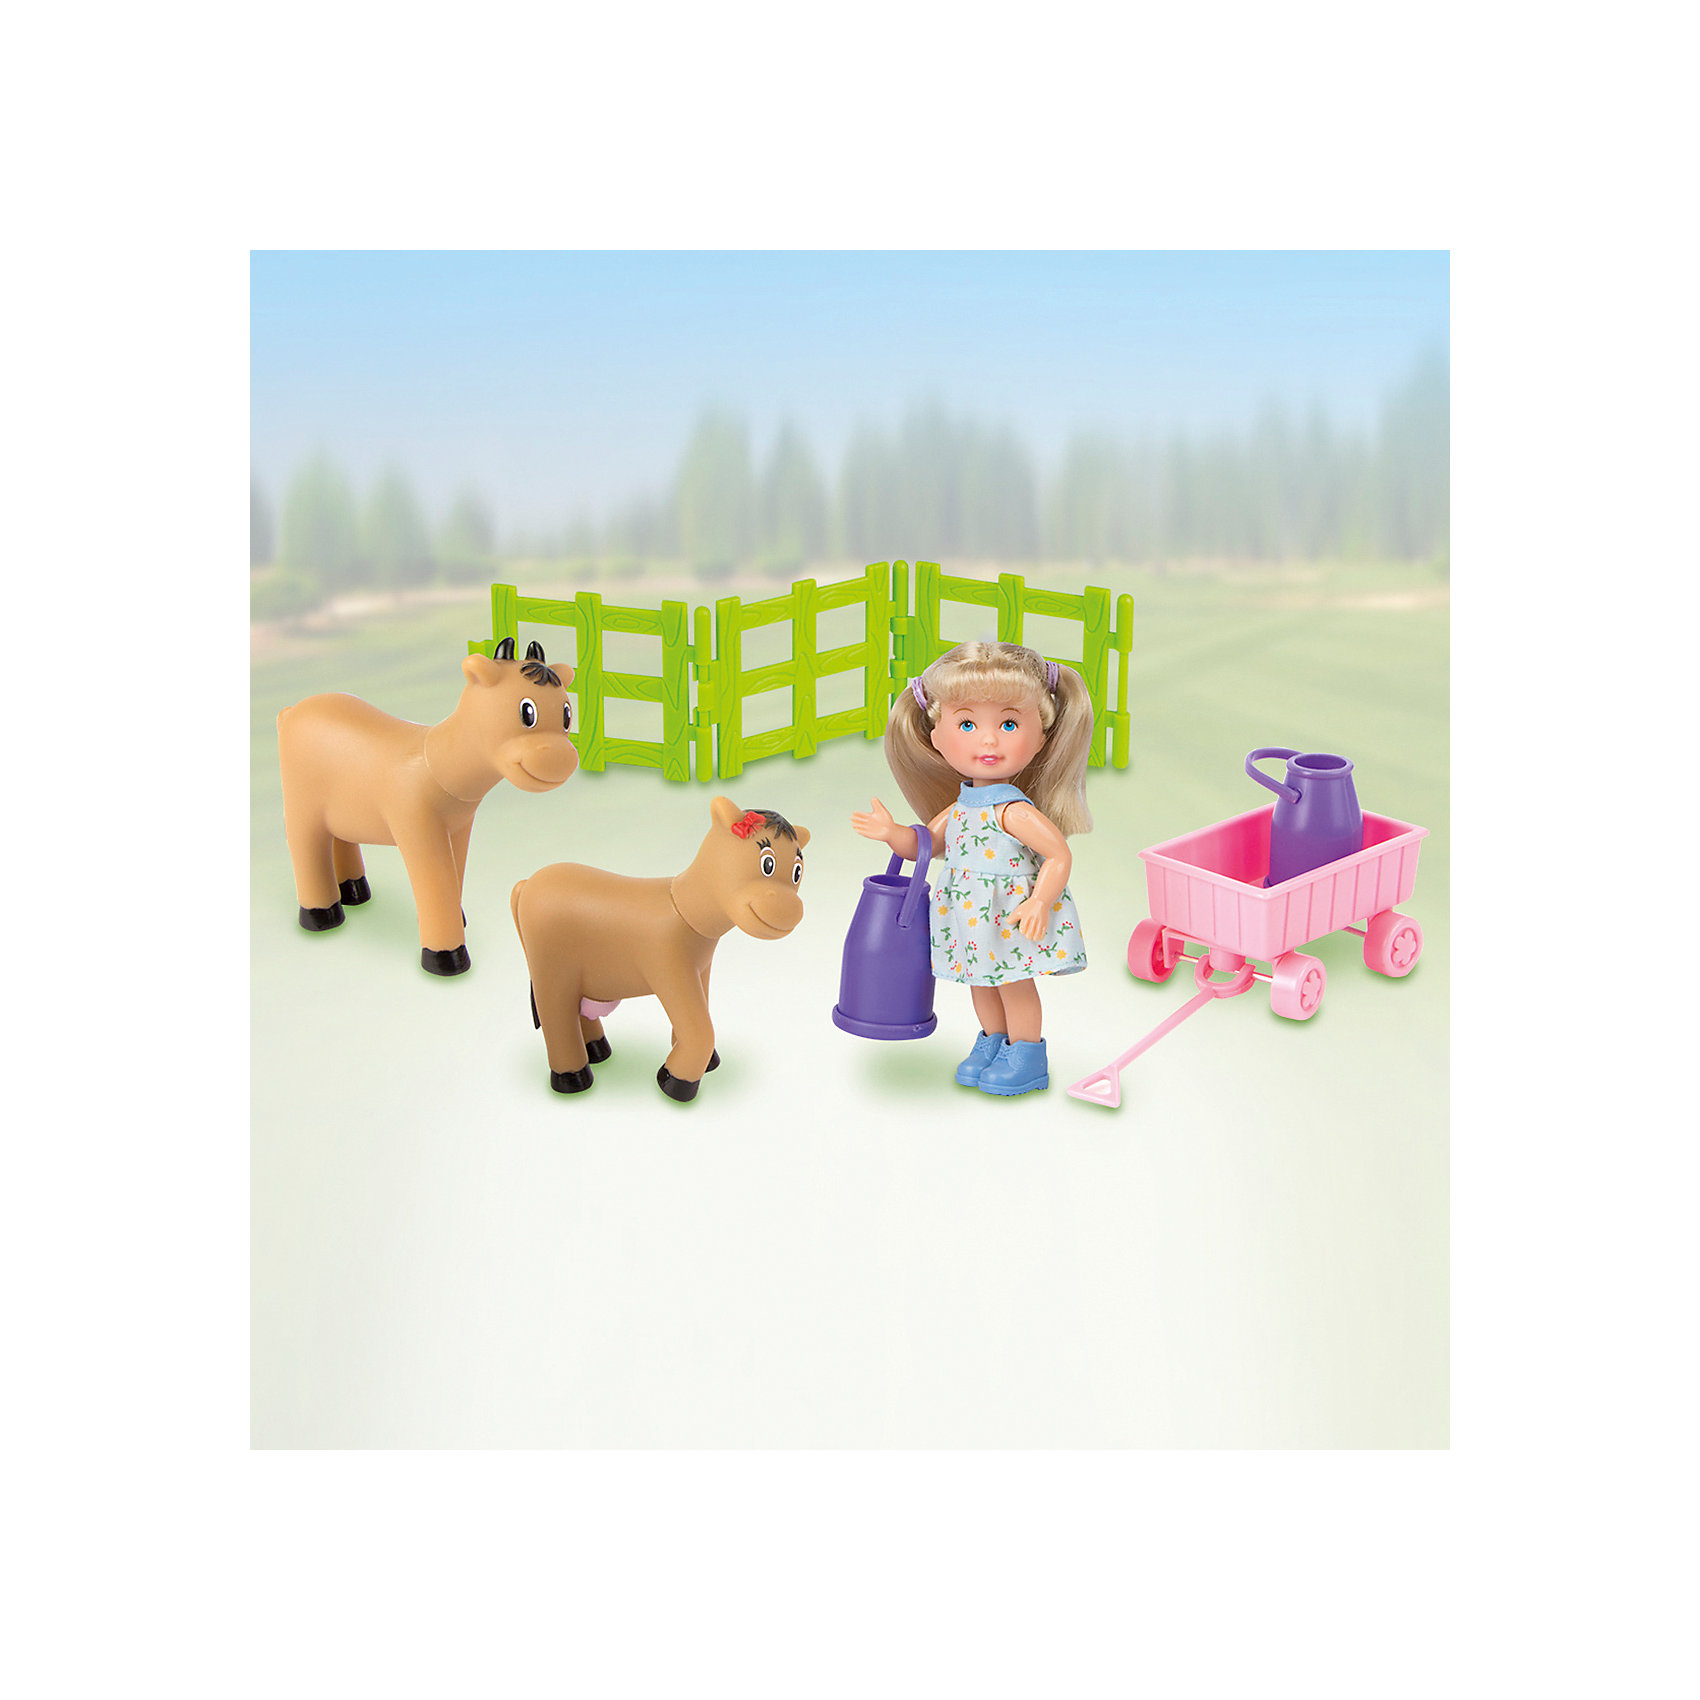 Игровой набор "В деревне: с коровами" PAULA 12505236